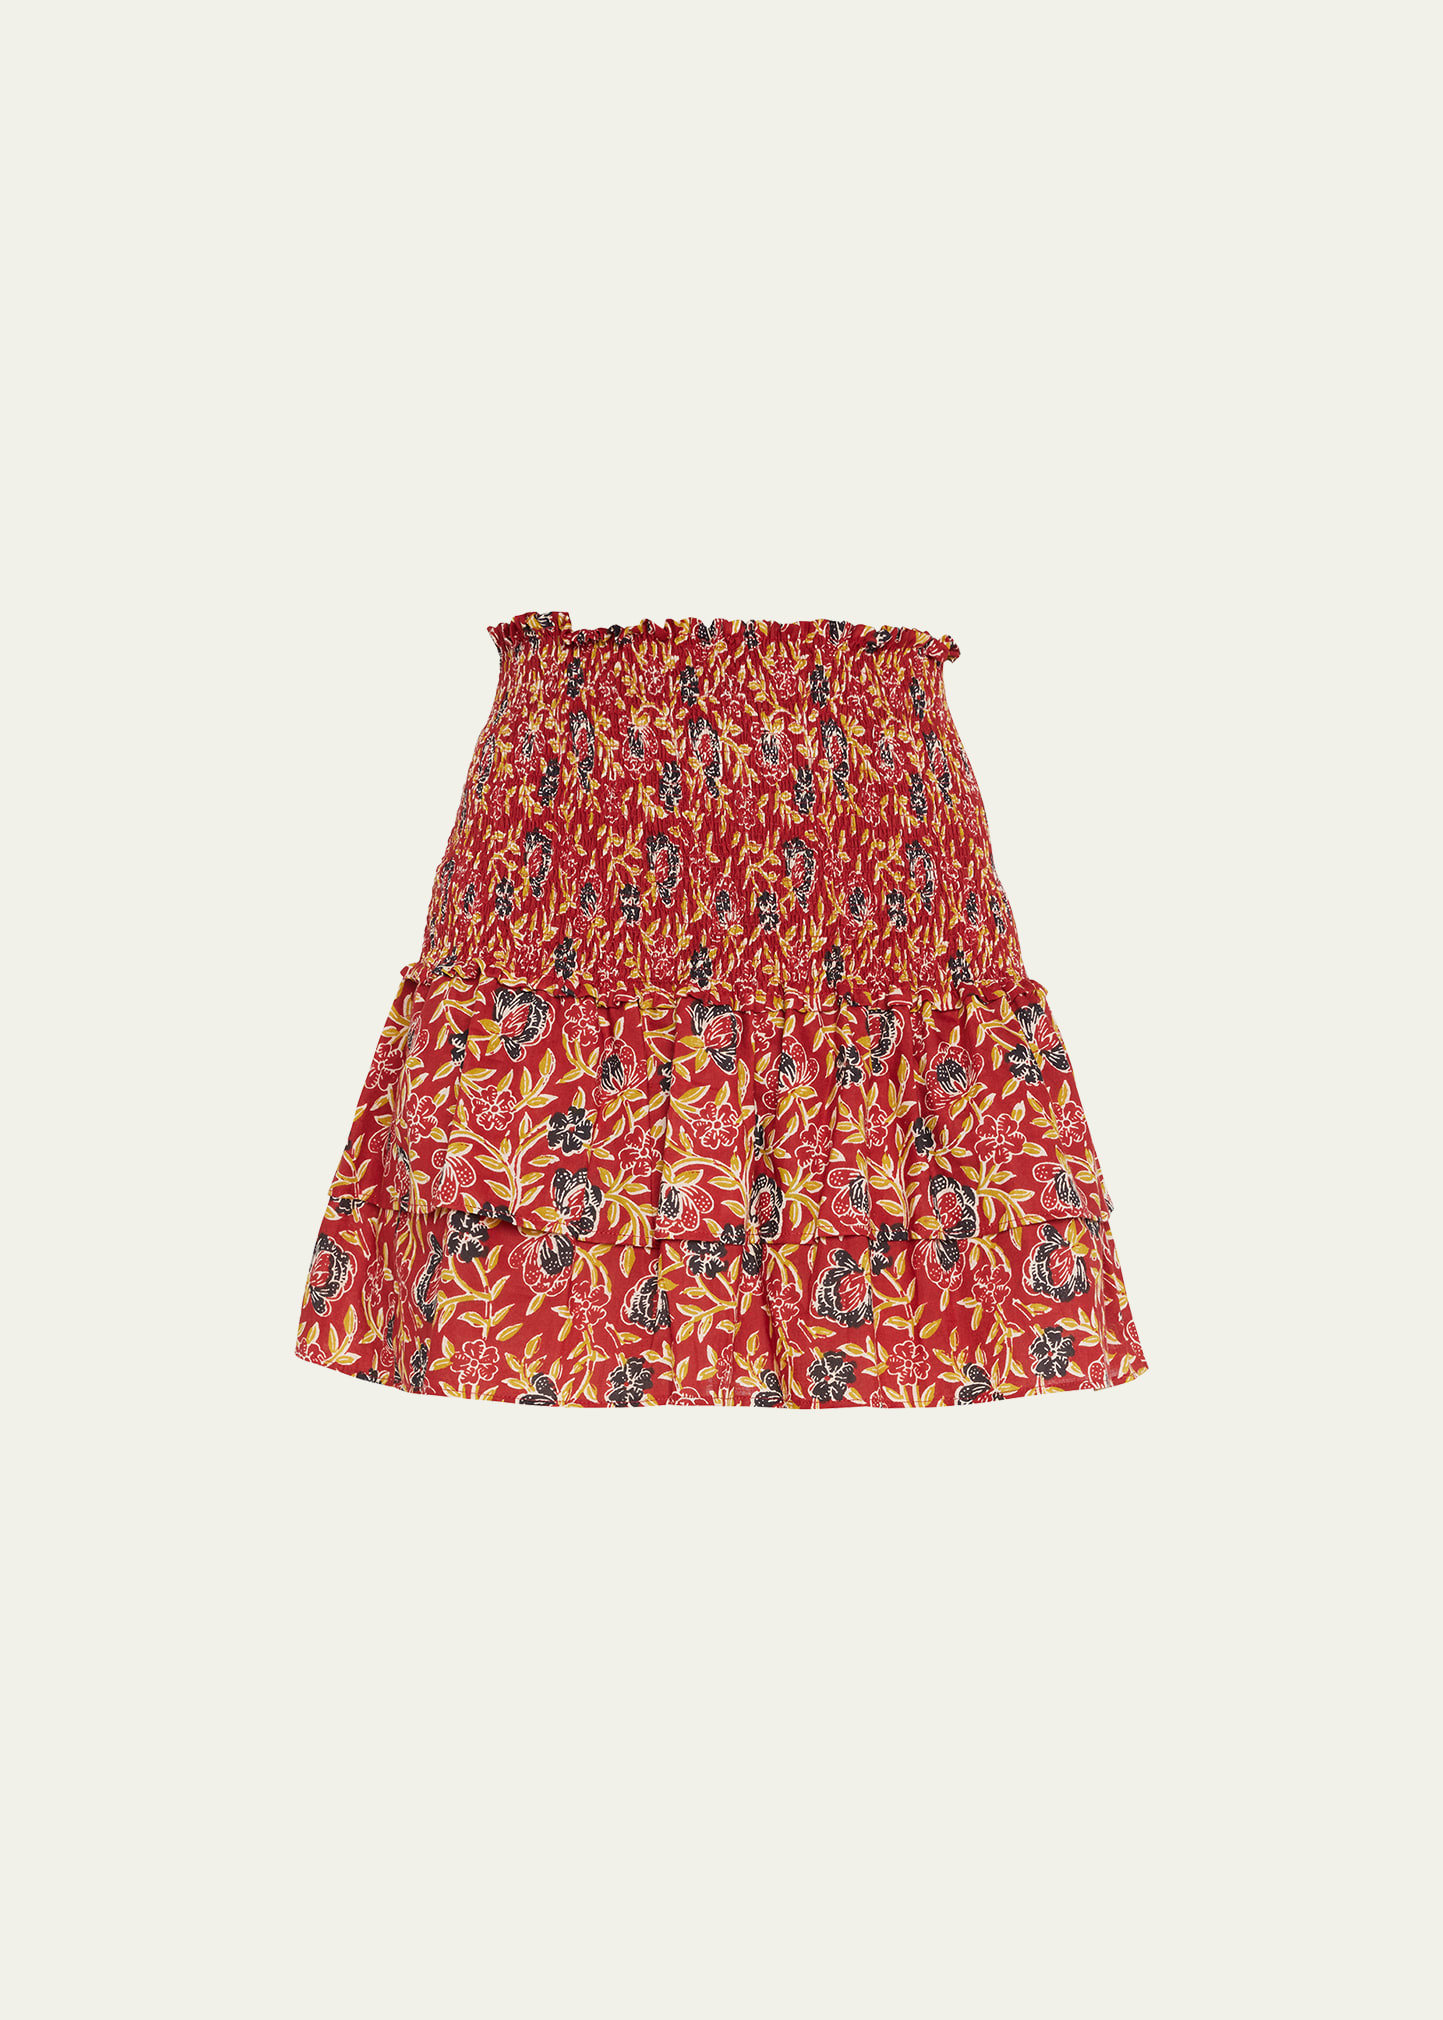 Alix of Bohemia Maria Floral Smocked Mini Skirt